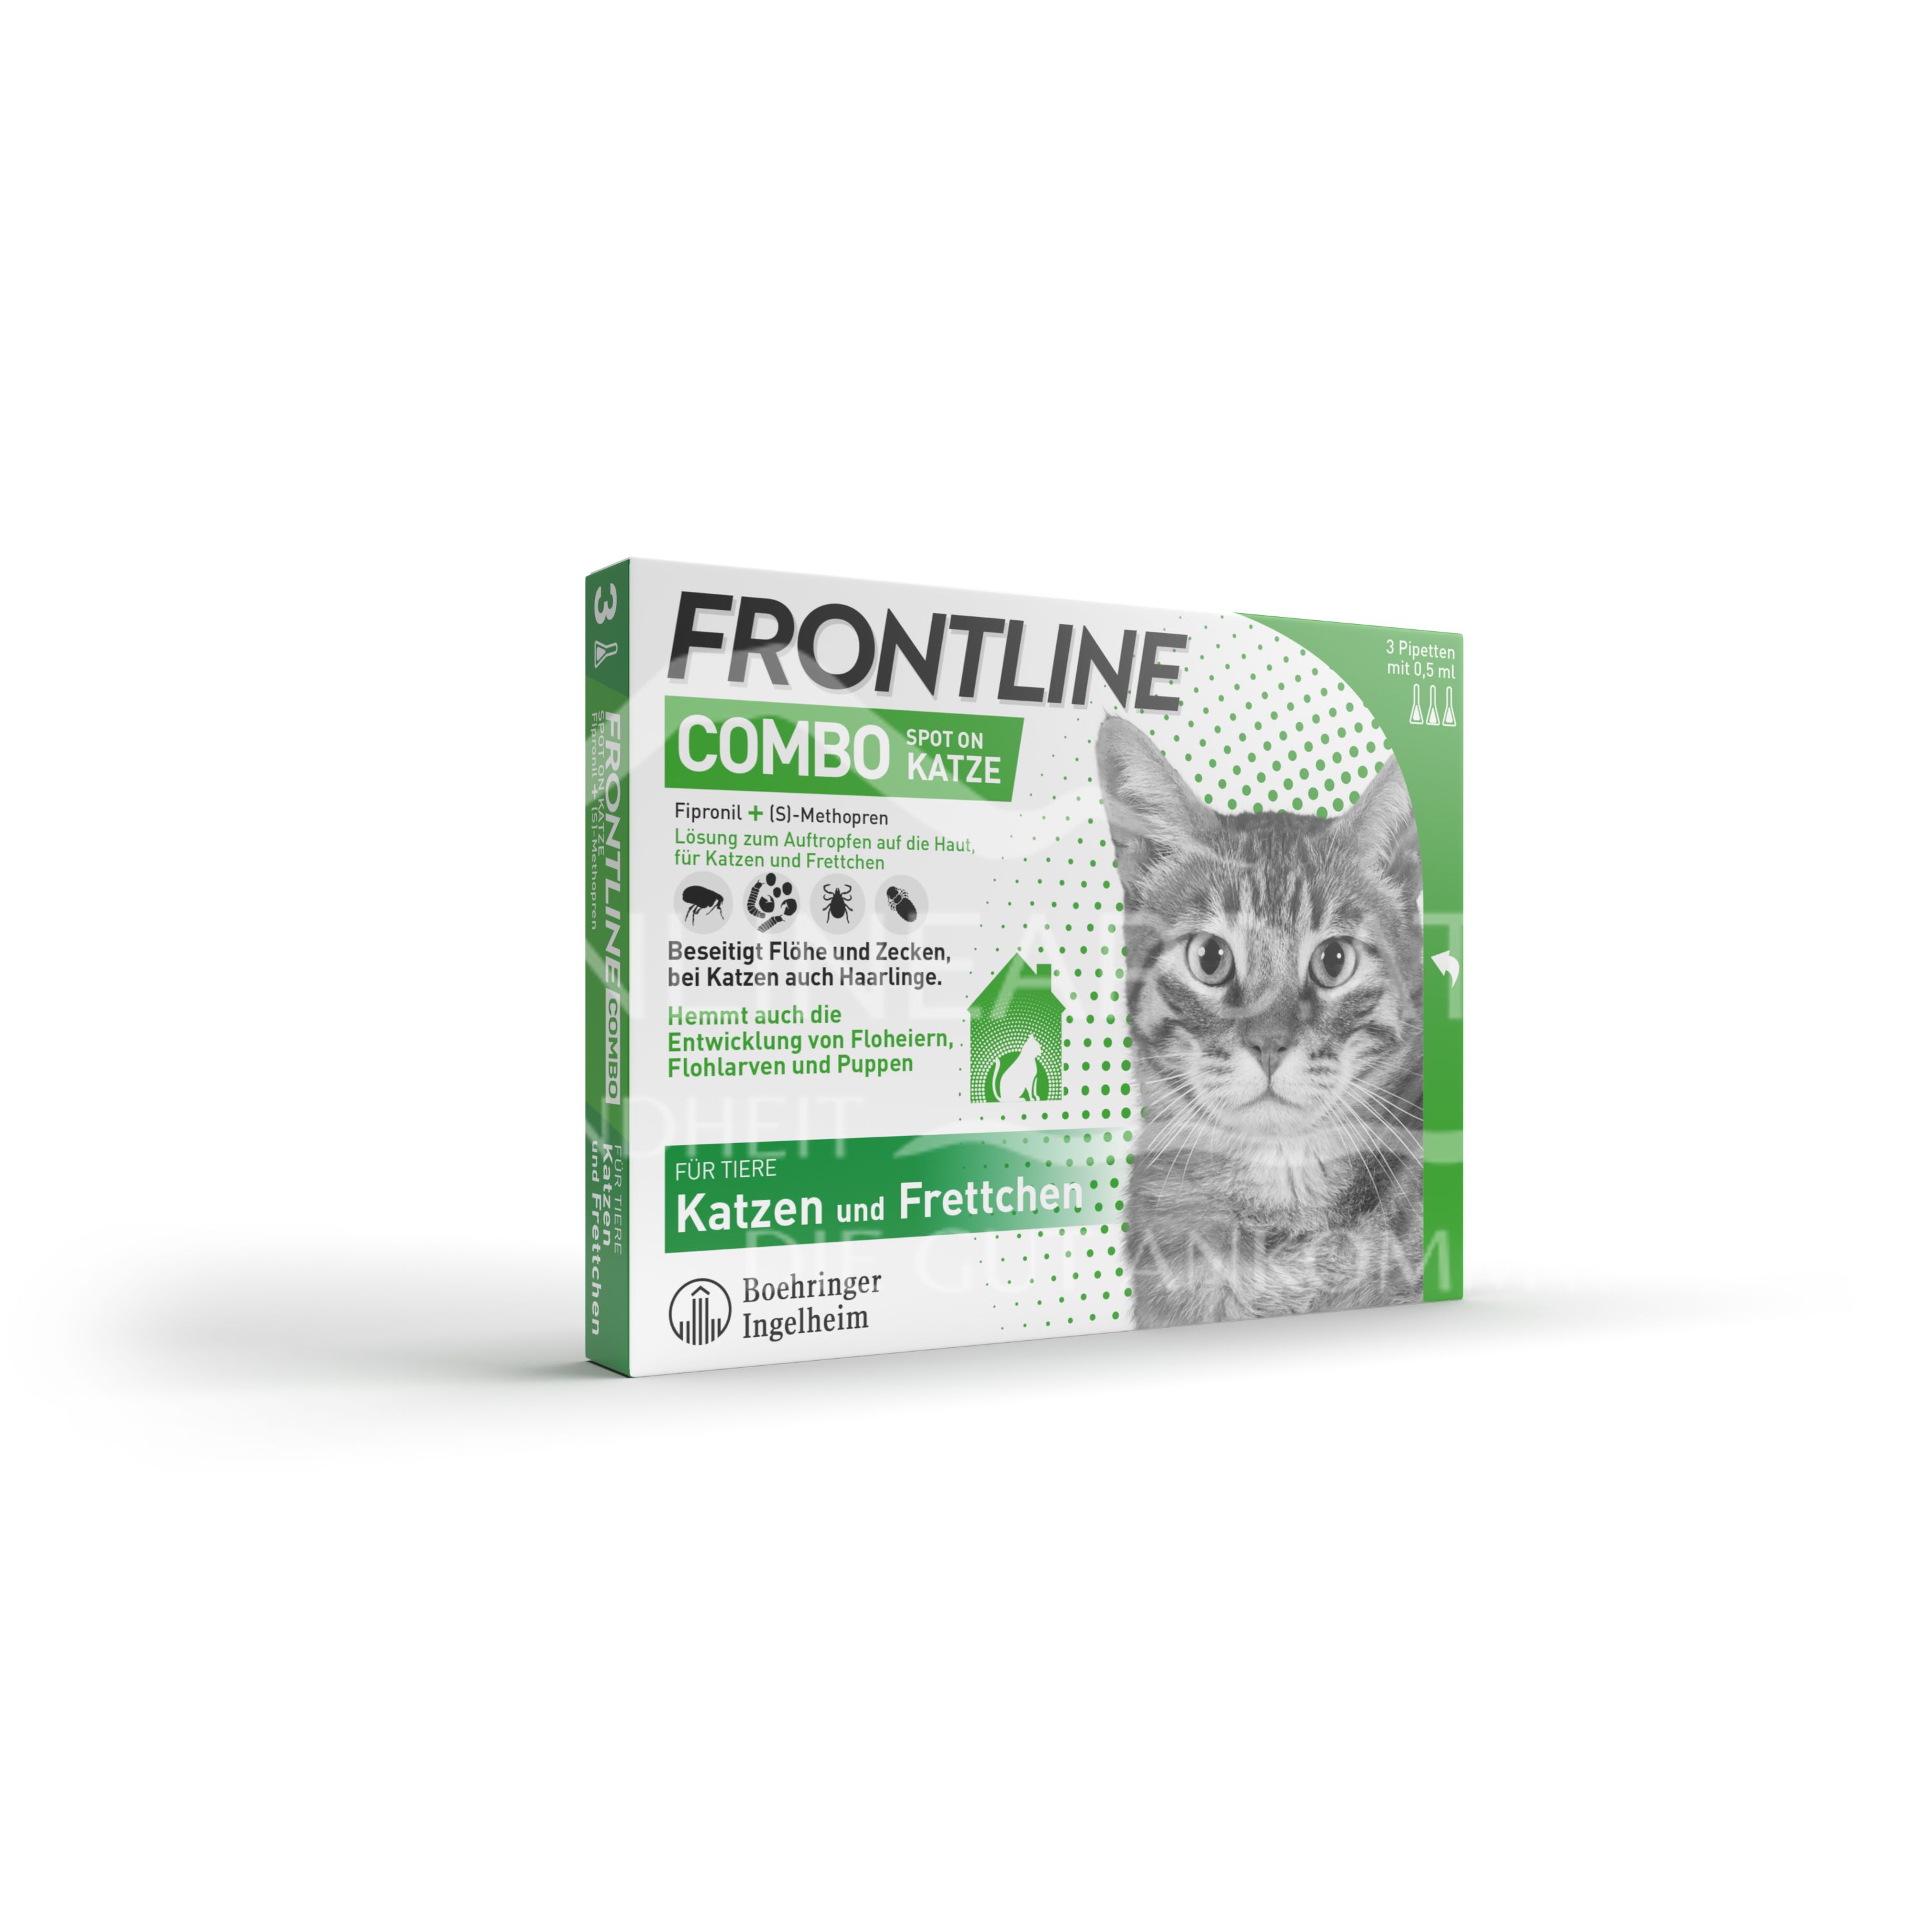 Frontline Combo Spot on Katze Lösung zum Auftropfen auf die Haut